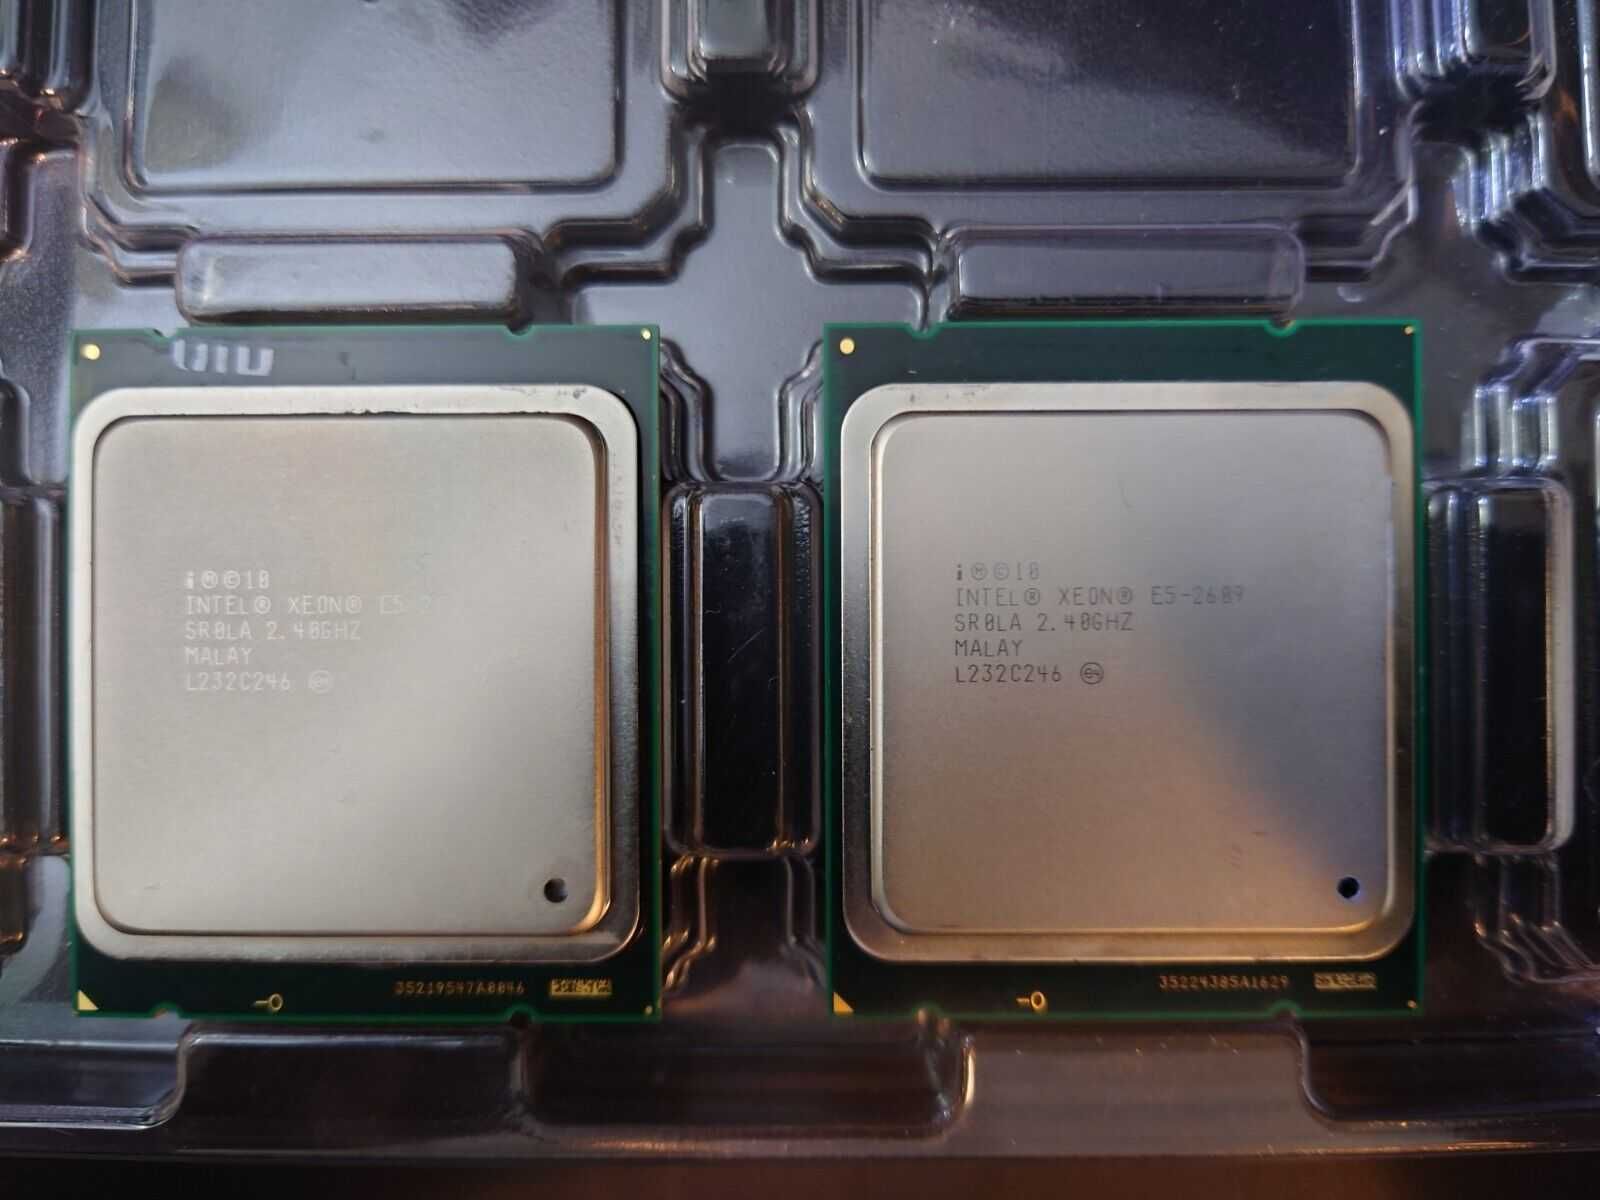 Проц Intel Xeon E5-2609 4 ядра Socket 2011